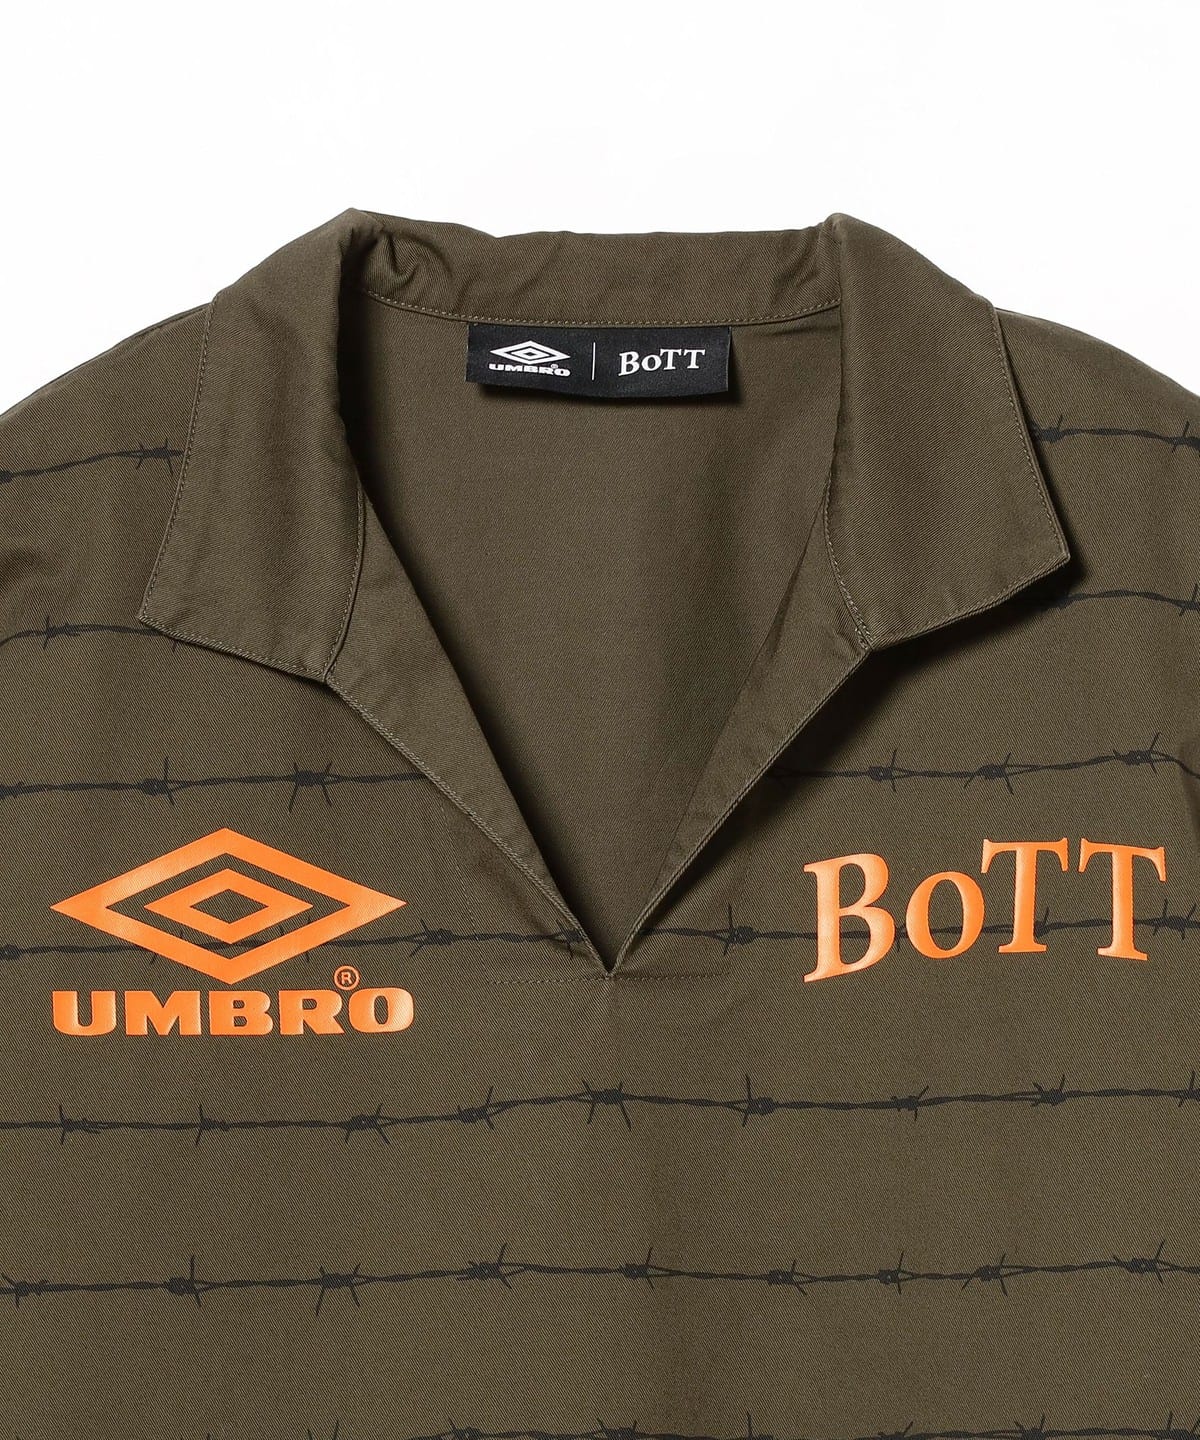 UMBRO  BoTT  BEAMS T Pullover Shirt Lサイズジャケット・アウター